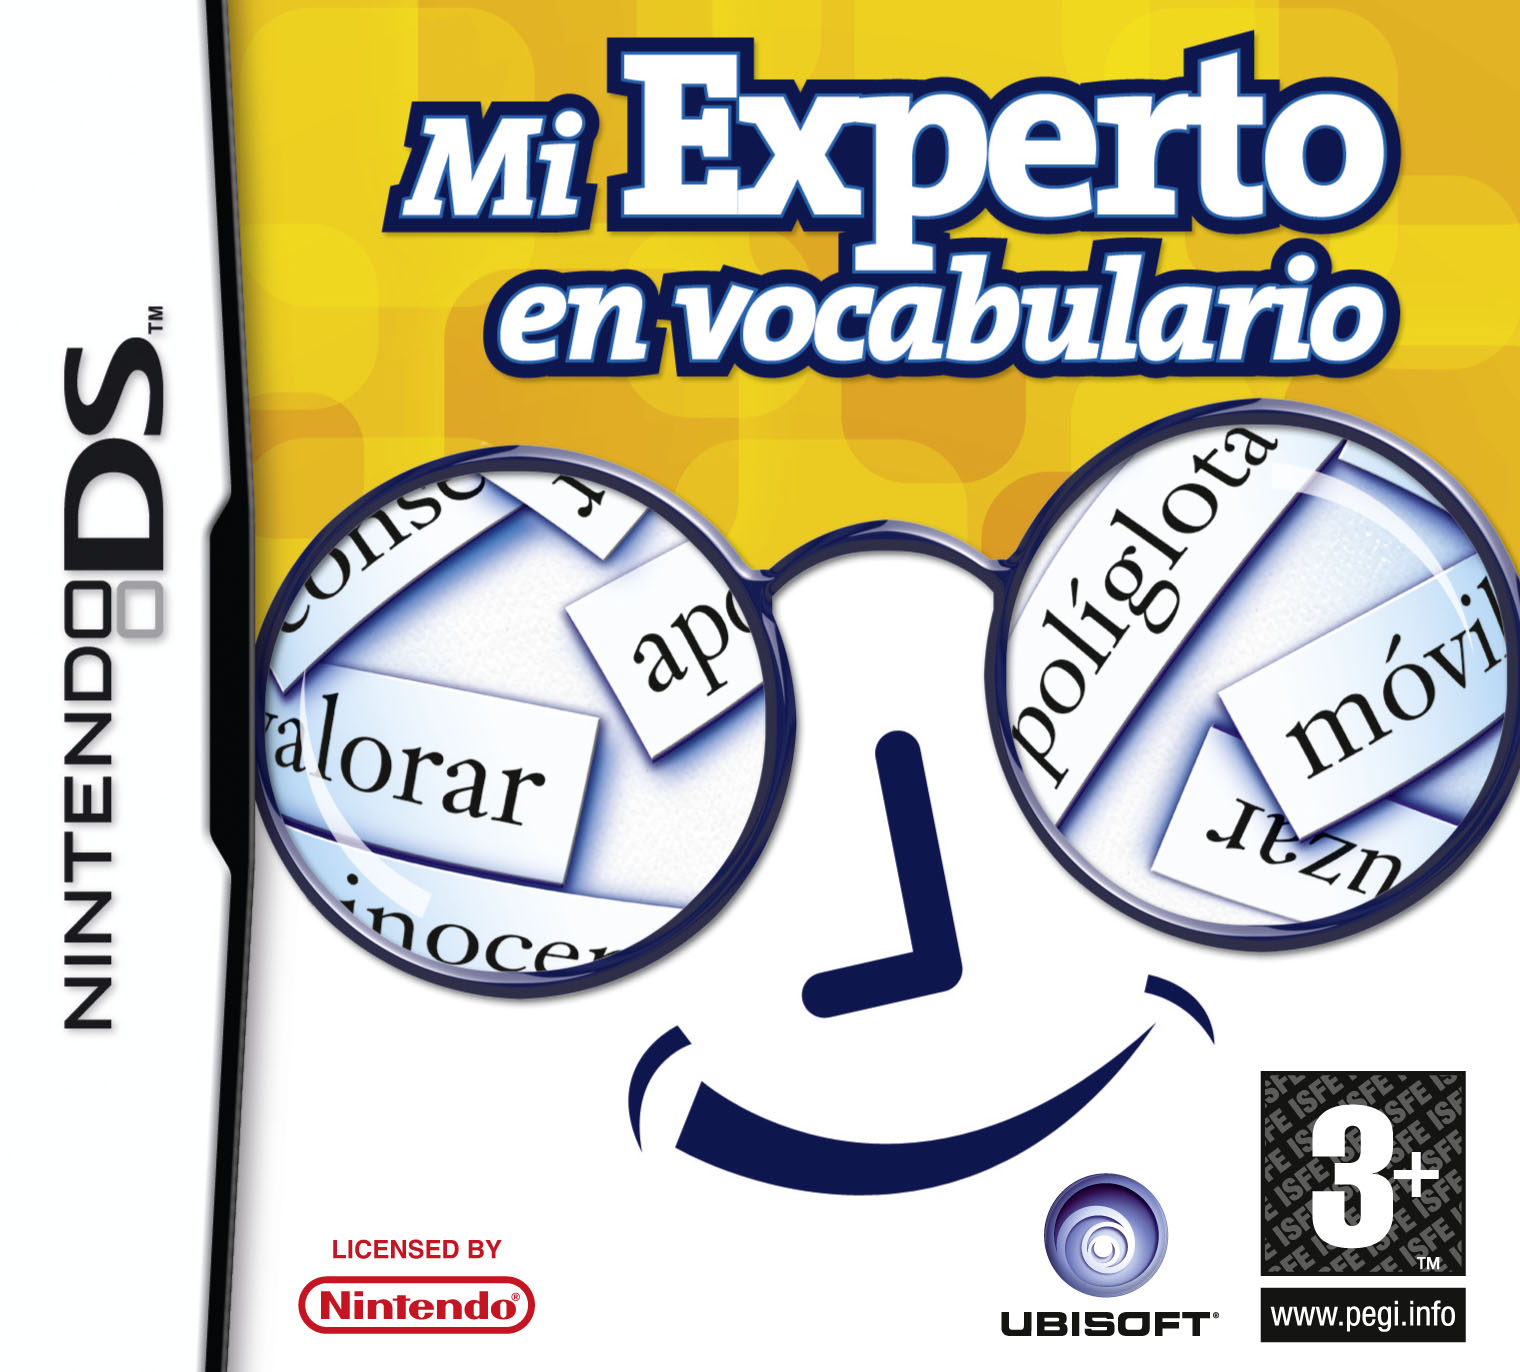 Carátula del juego 'Mi experto en vocabulario'